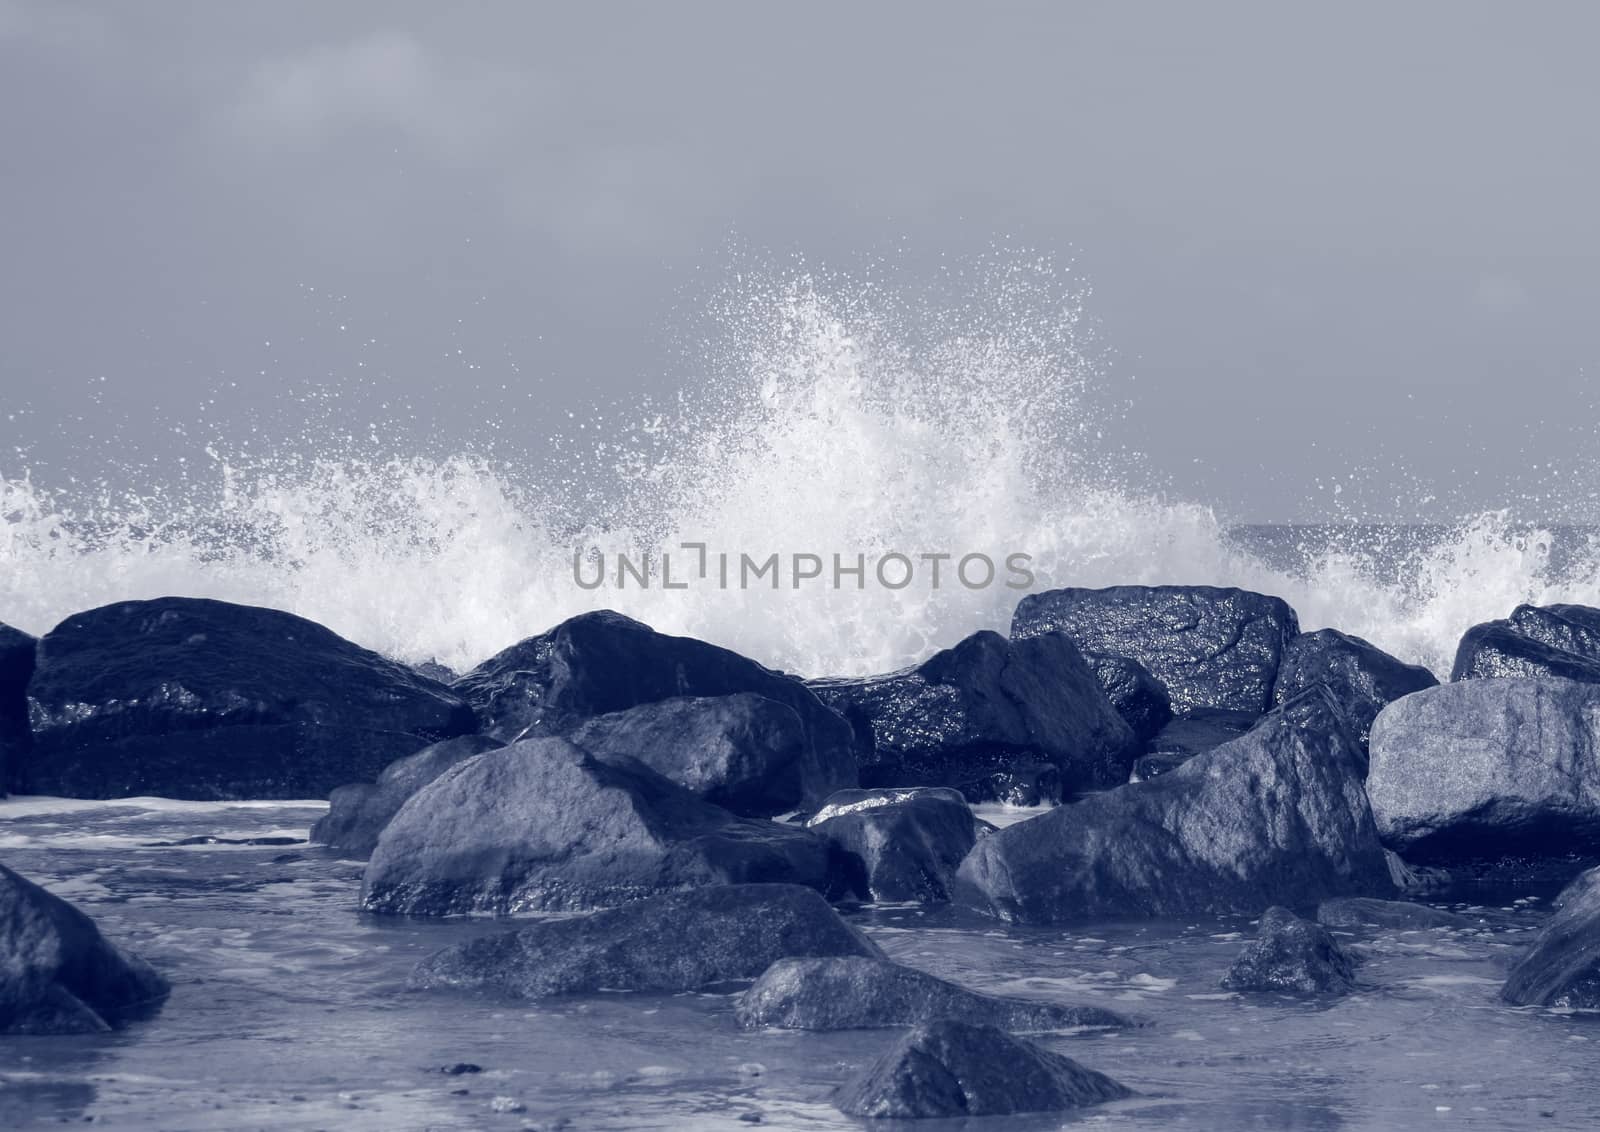 Black rocks protecting coast against crashing white waves